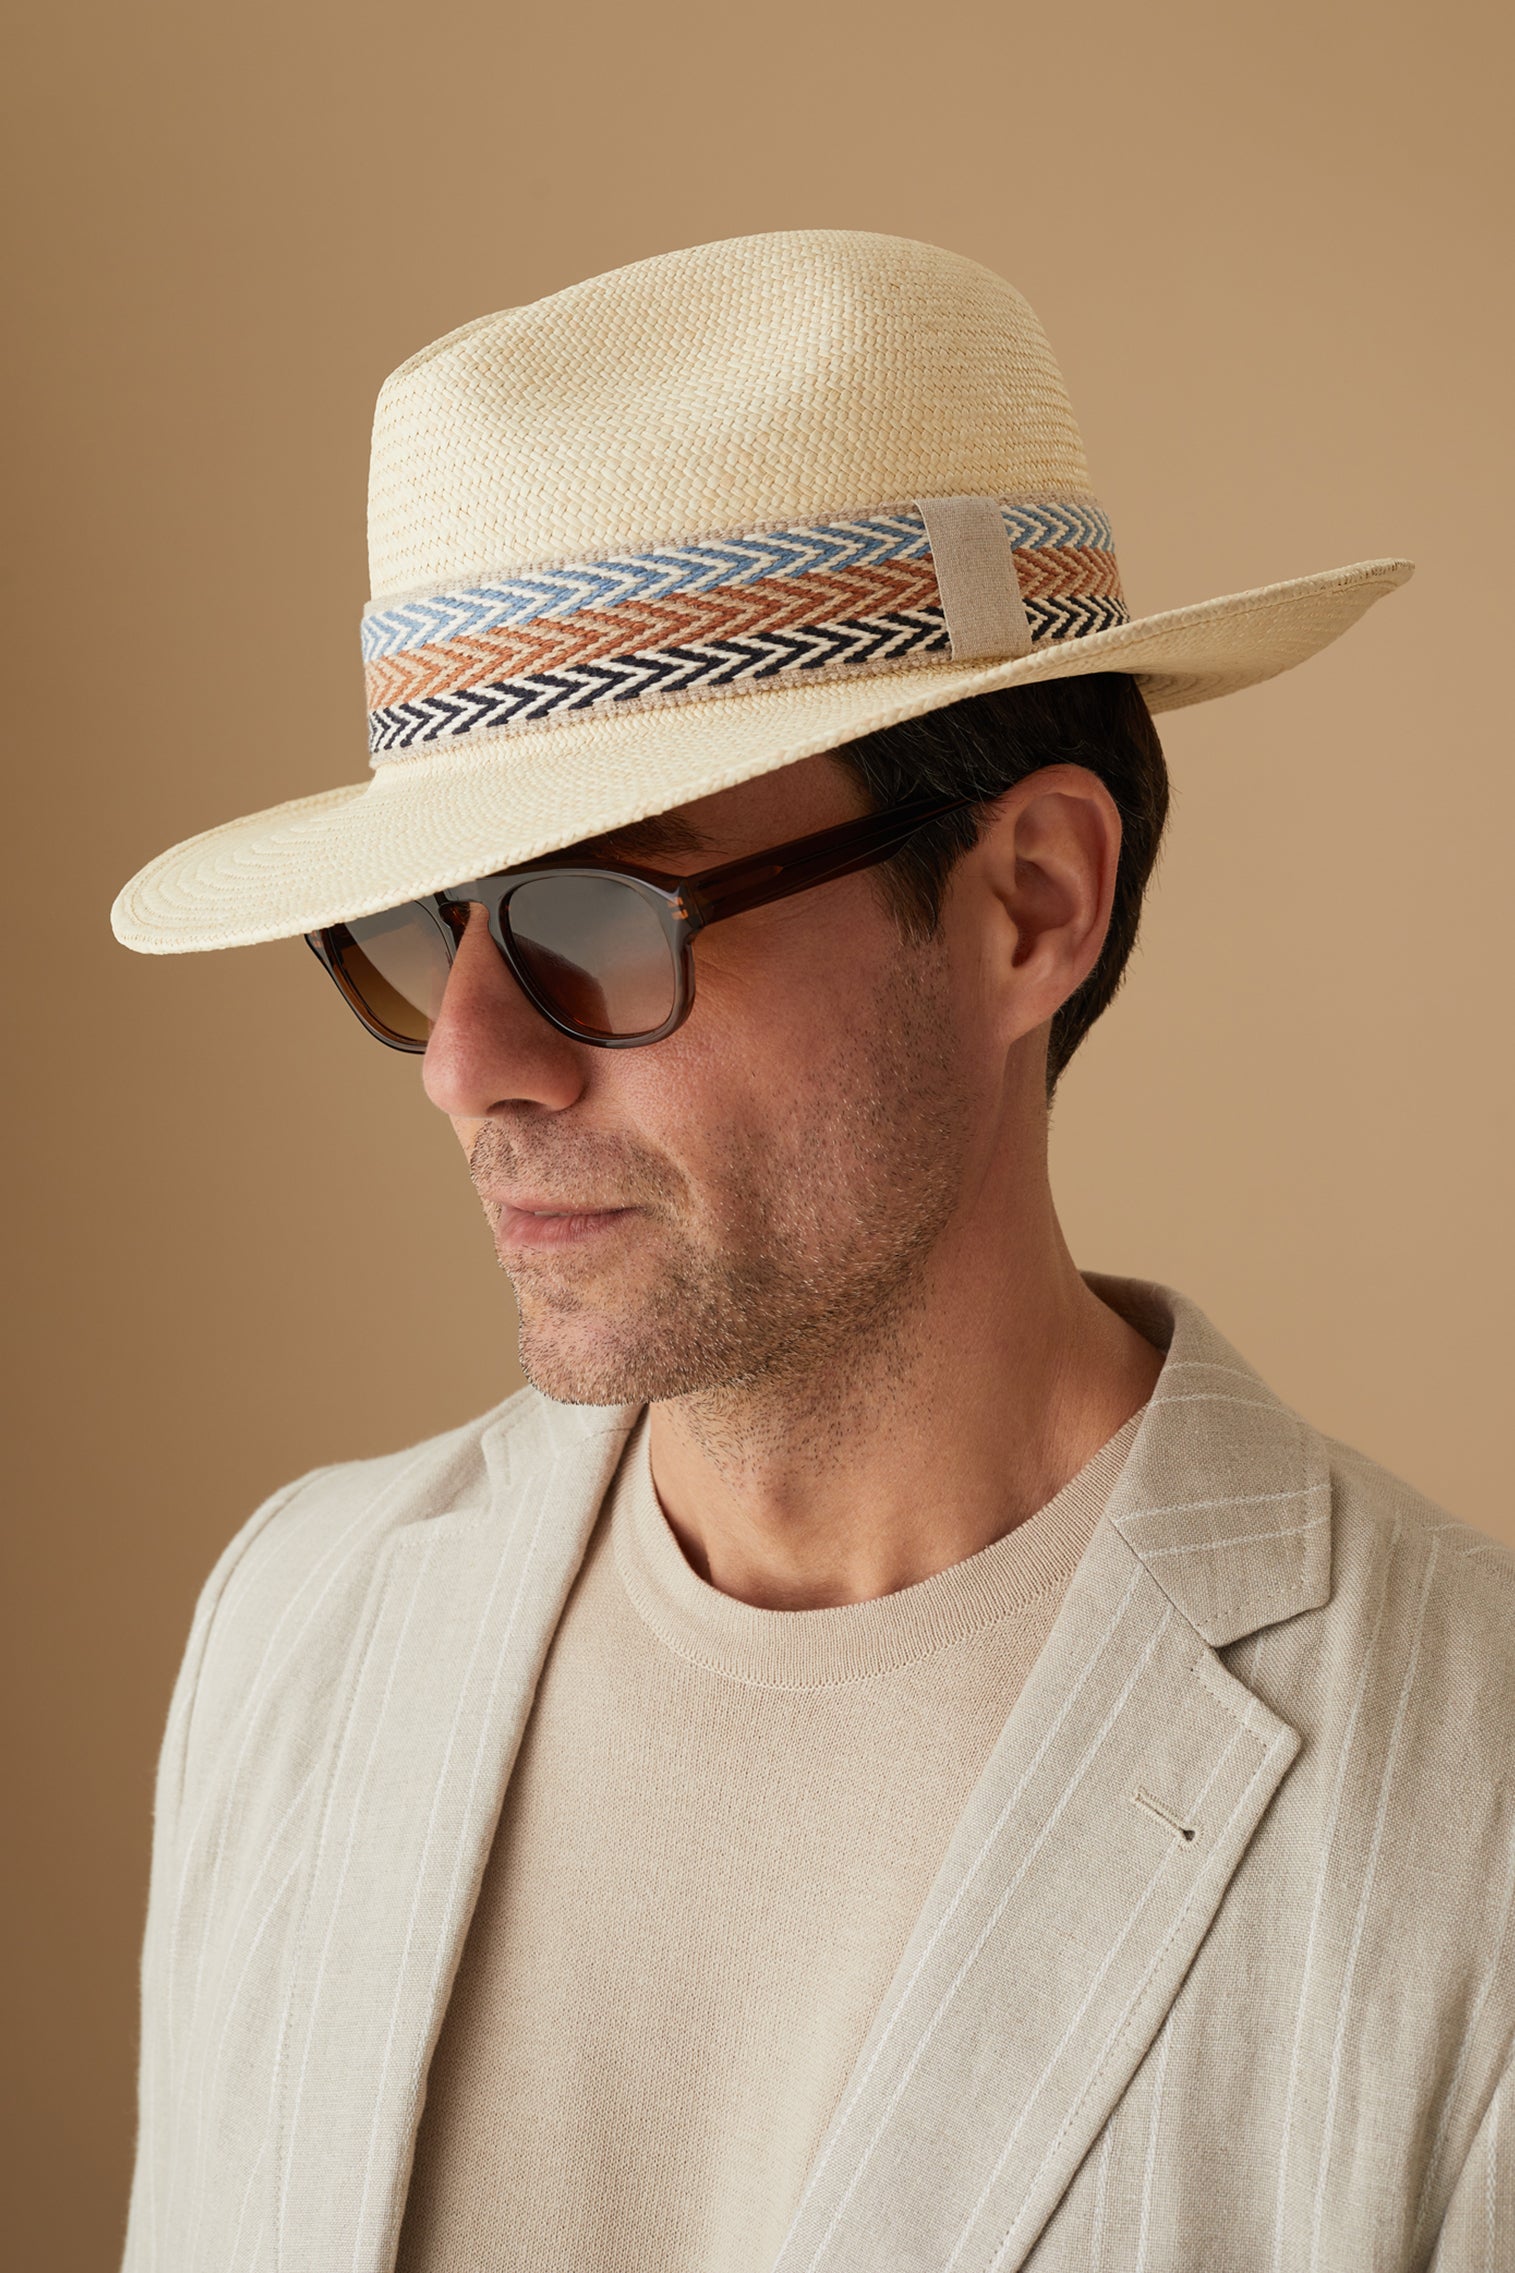 Walter Panama - New Season Men's Hats - Lock & Co. Hatters London UK